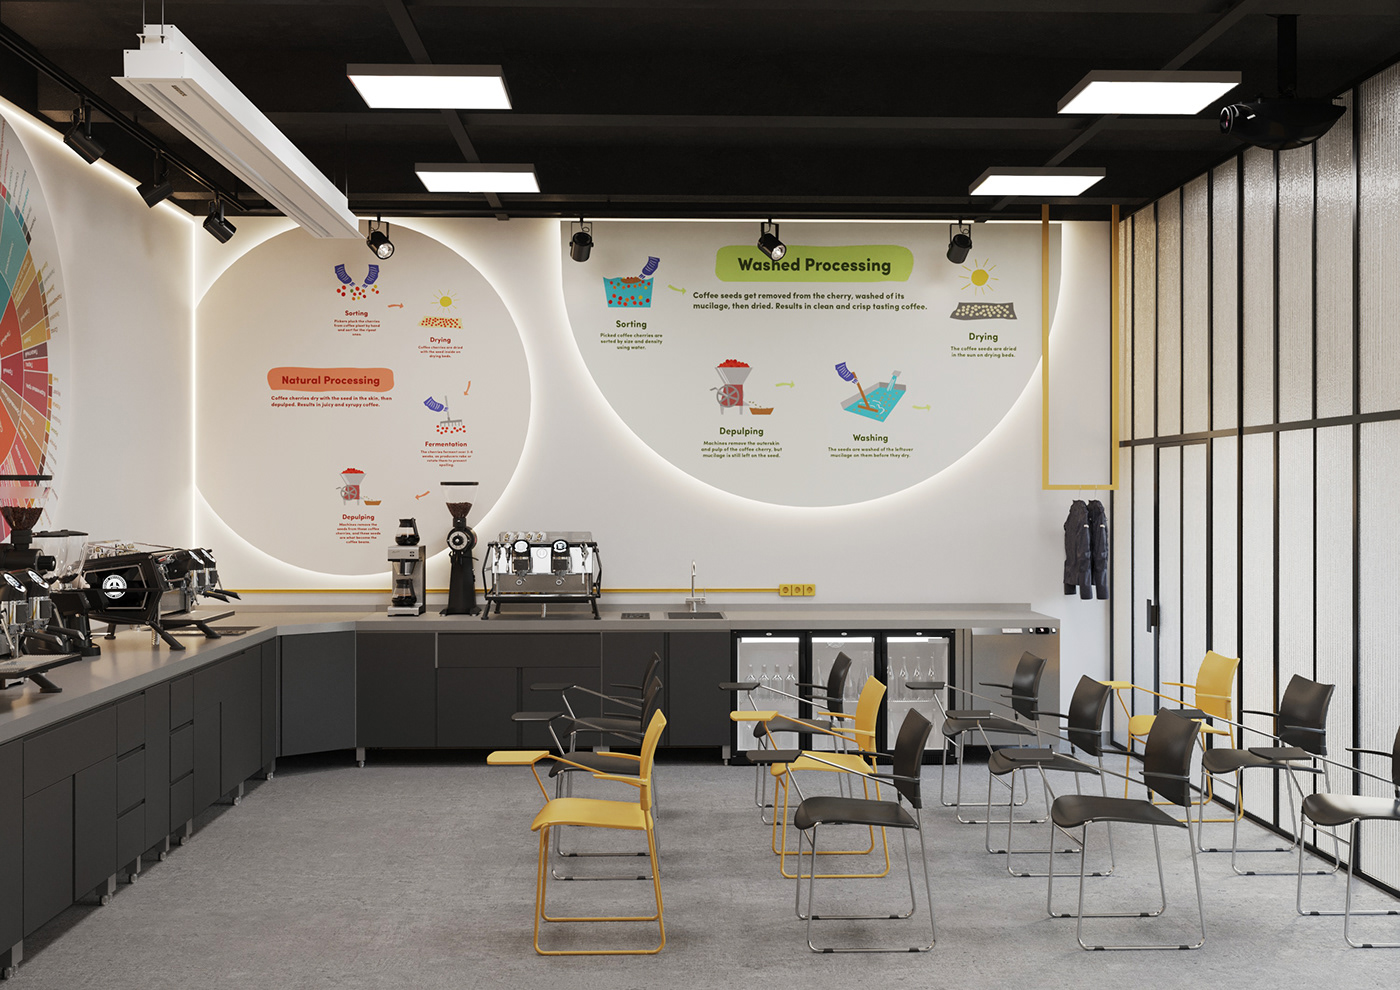 academia cafe Coffee coffee shop design interior design  LOFT school showroom wc